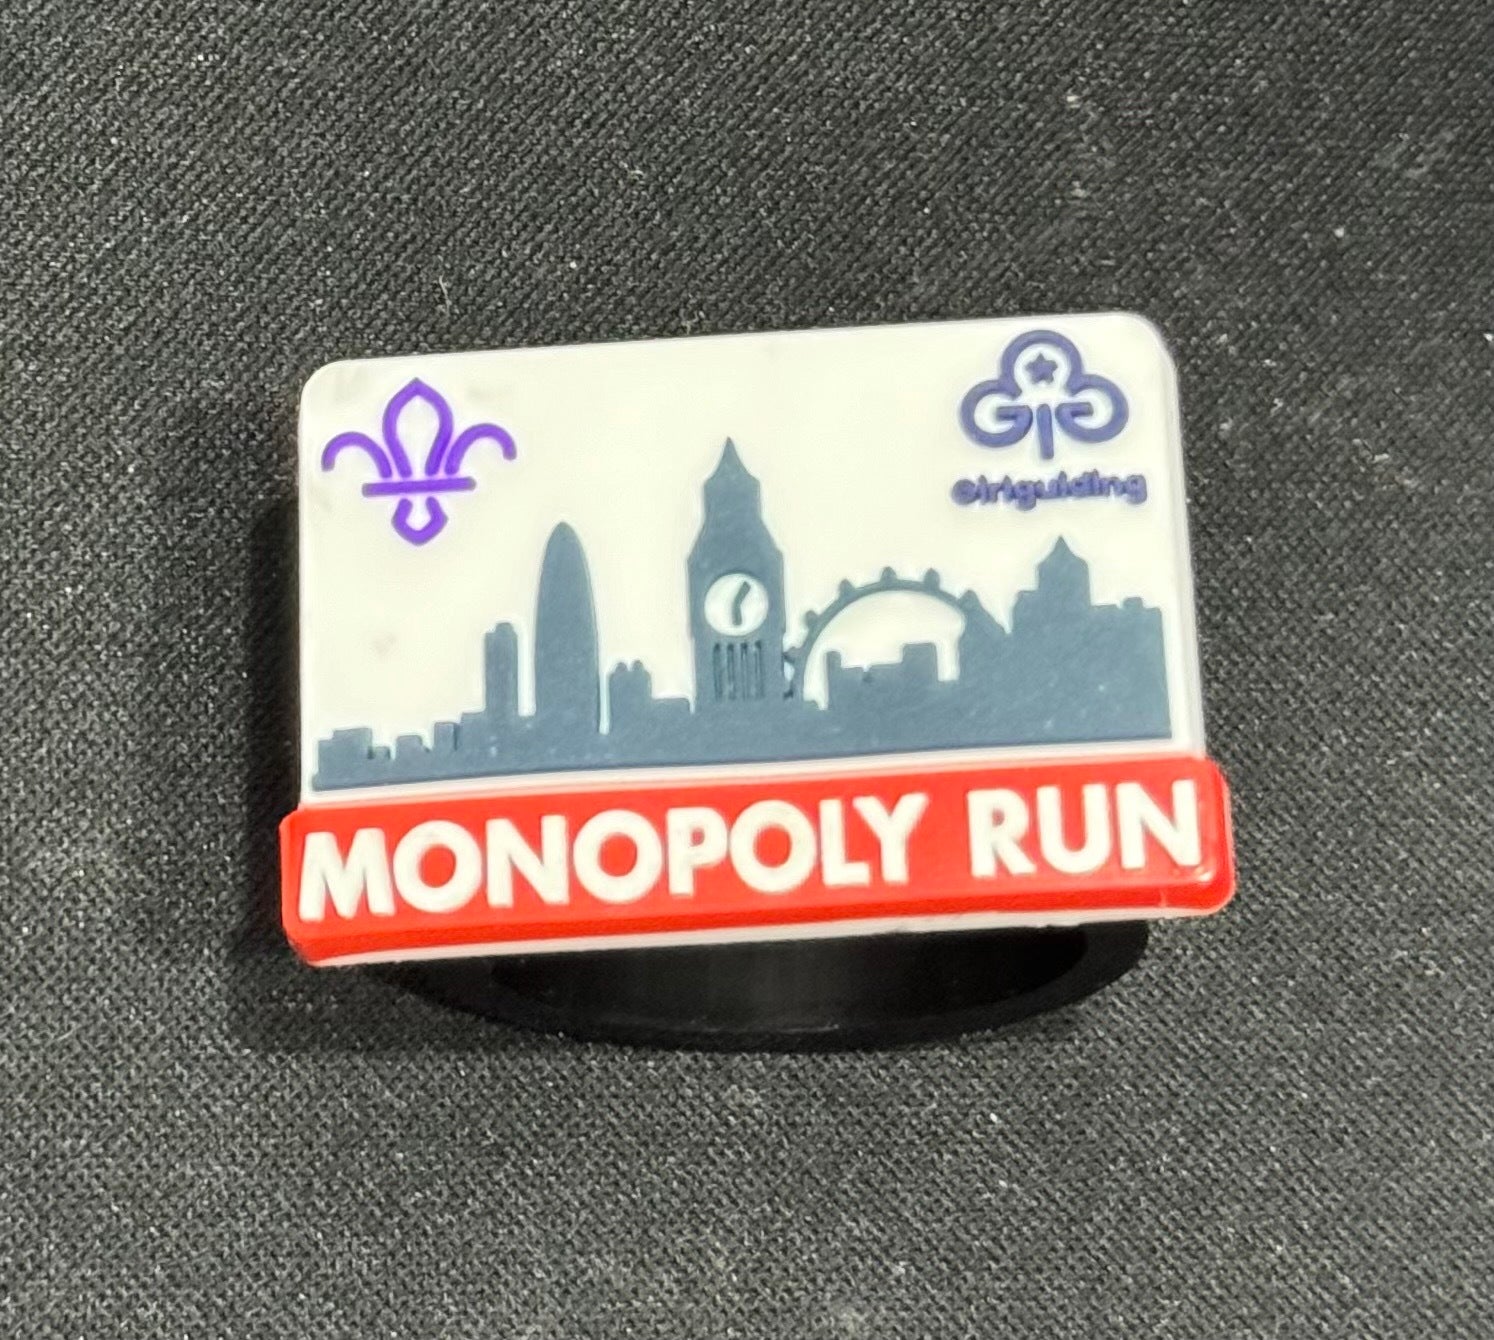 Monopoly Run "Live" Shop